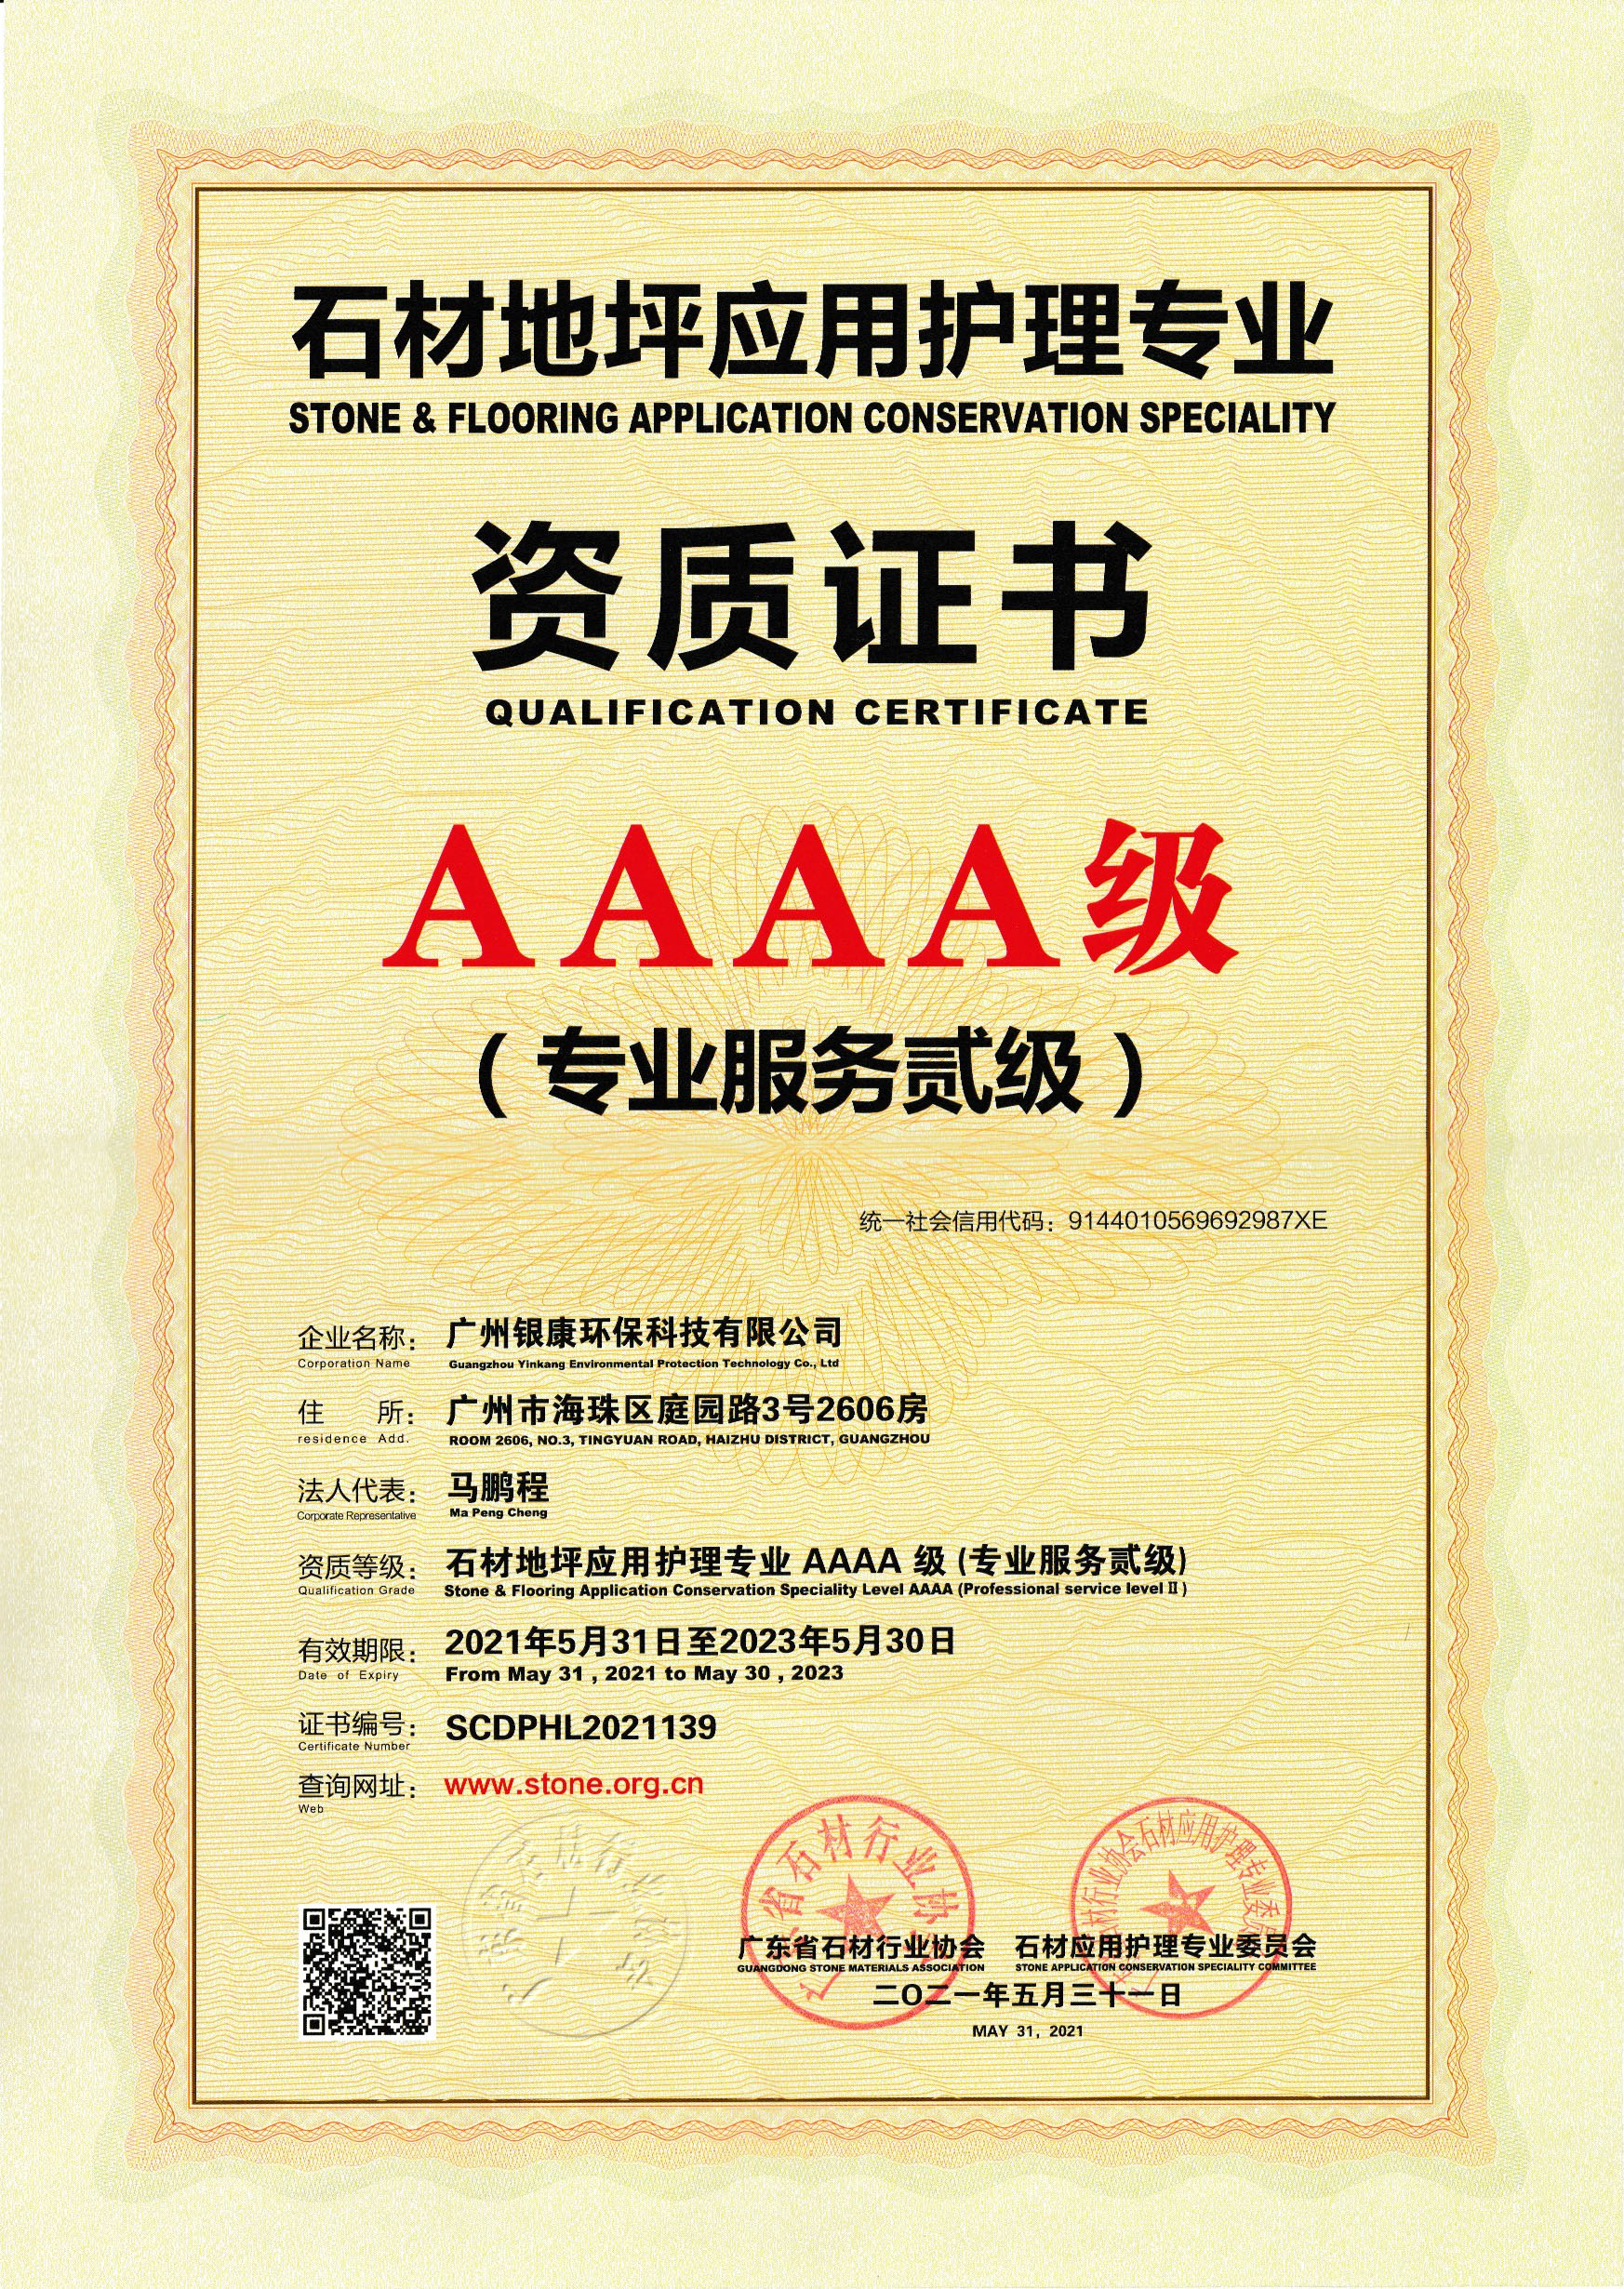 石材地坪应用护理专业AAAA级资质证书